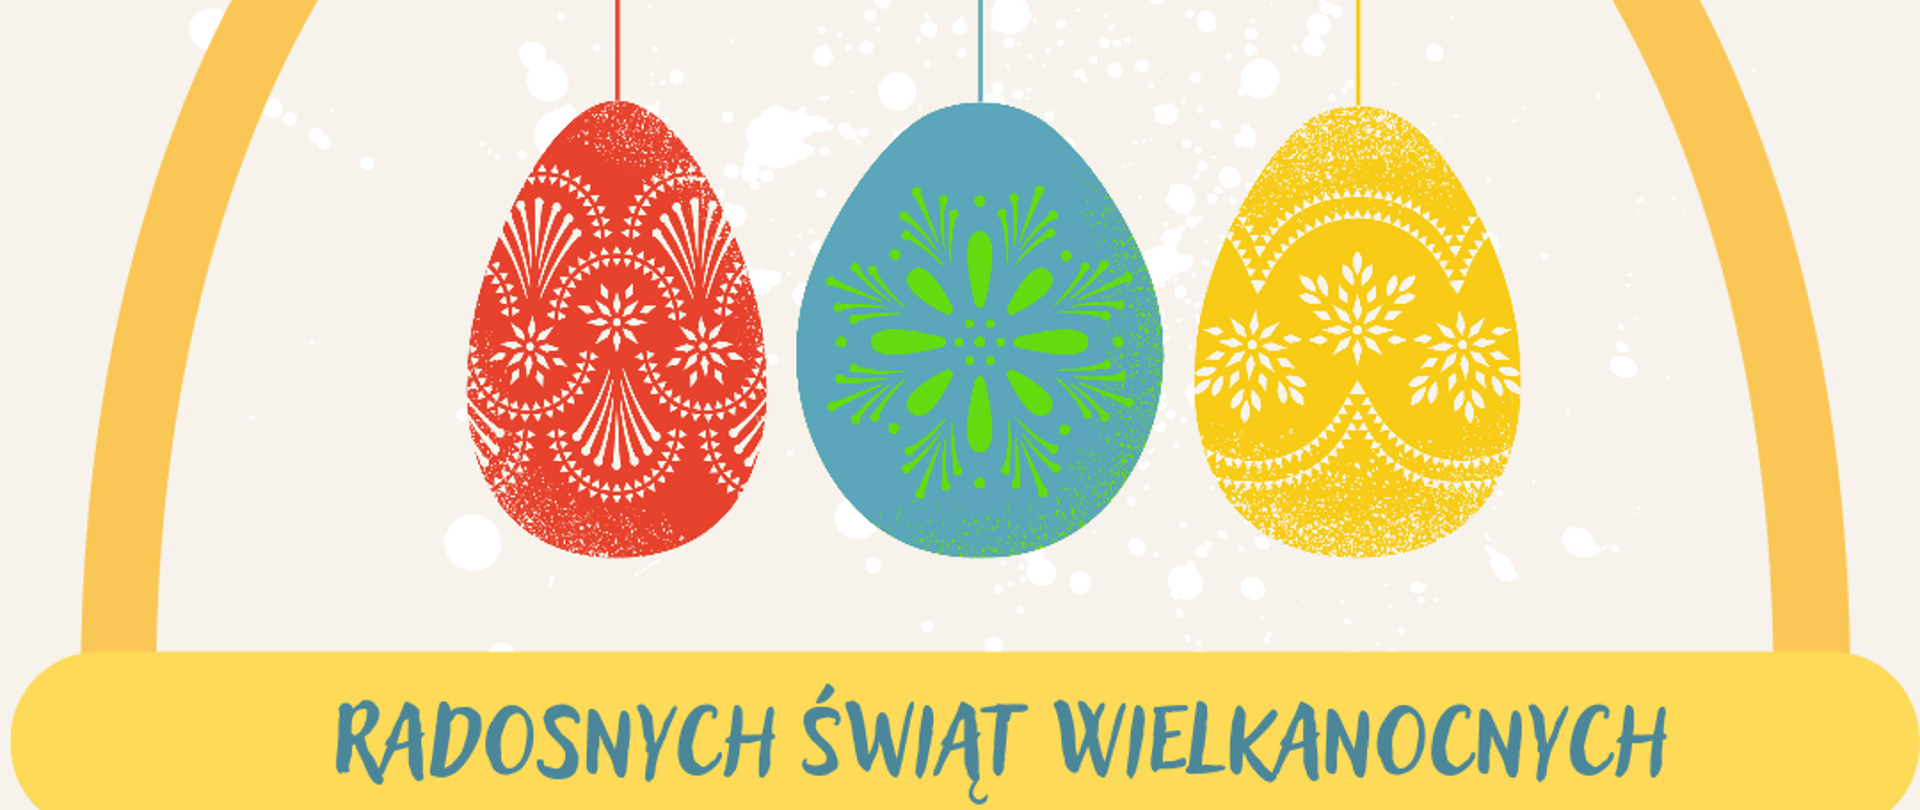 Wielkanocna kartka świąteczna przedstawiająca żółty koszyczek. Na jego rączce powieszone są trzy kolorowe pisanki - czerwona, niebieska i żółta. Na koszyczku napisane są życzenia świąteczne. 